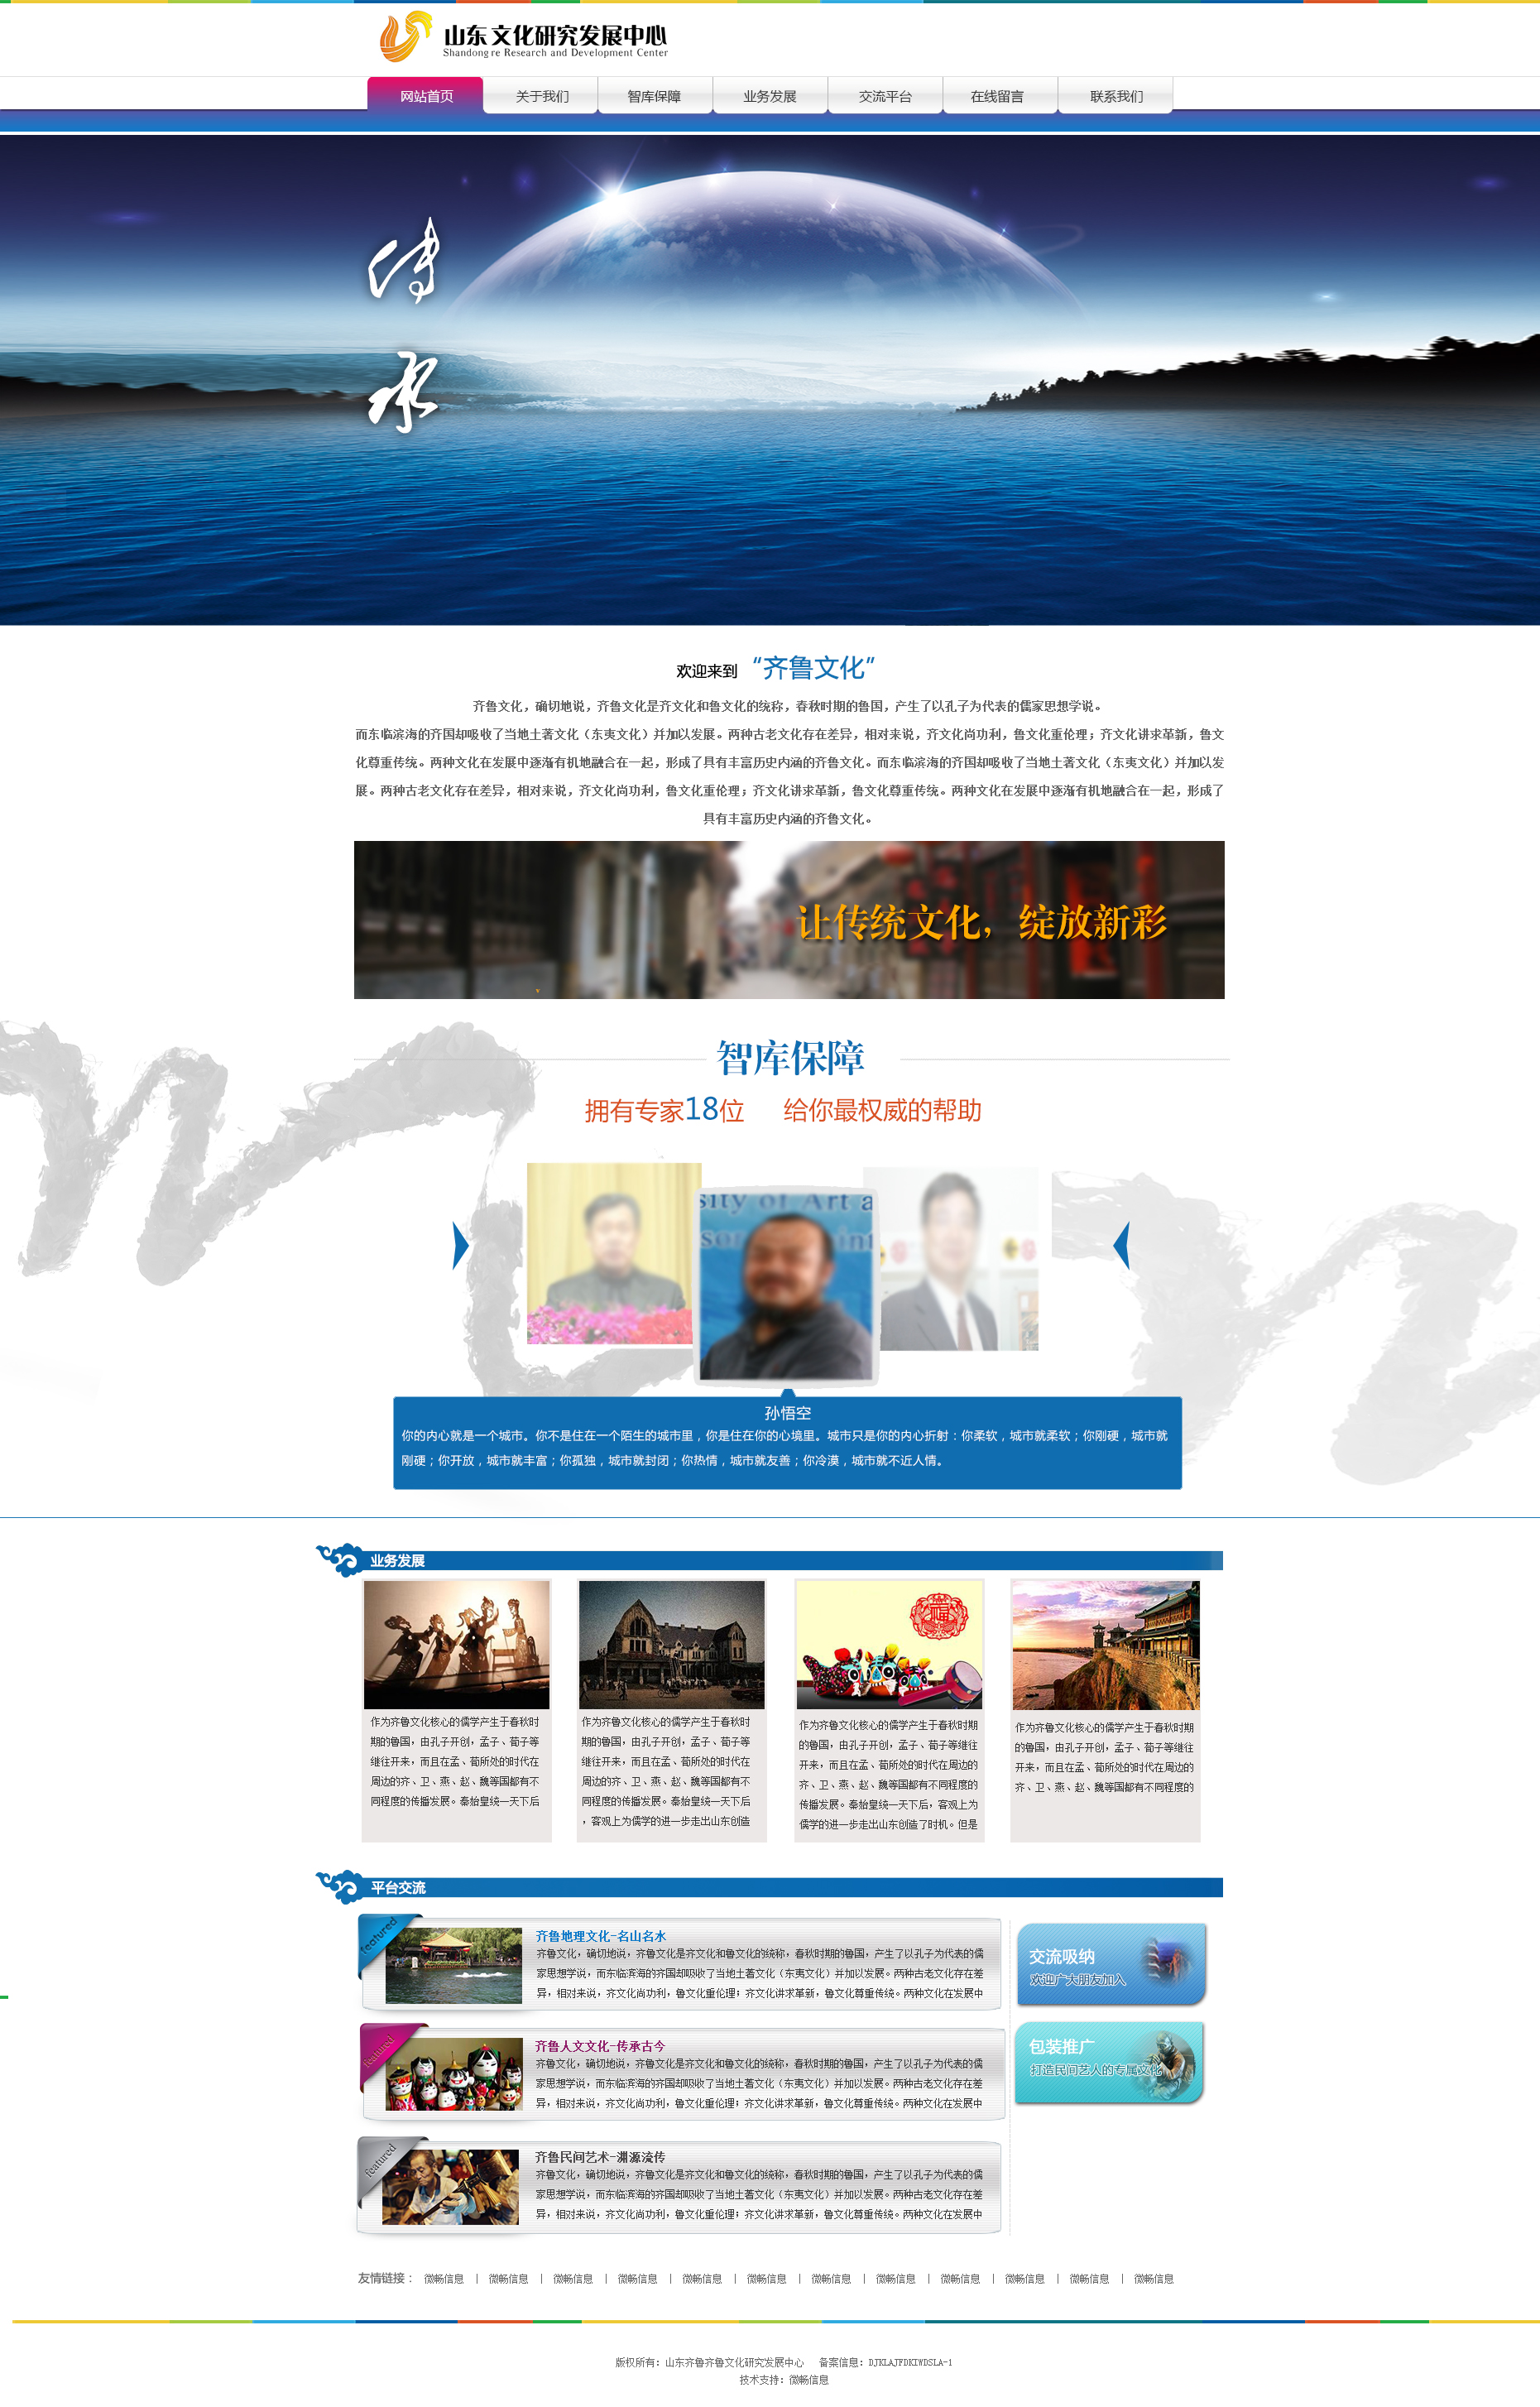 蓝色的企业文化网站模板首页psd_企业网站模板插图源码资源库